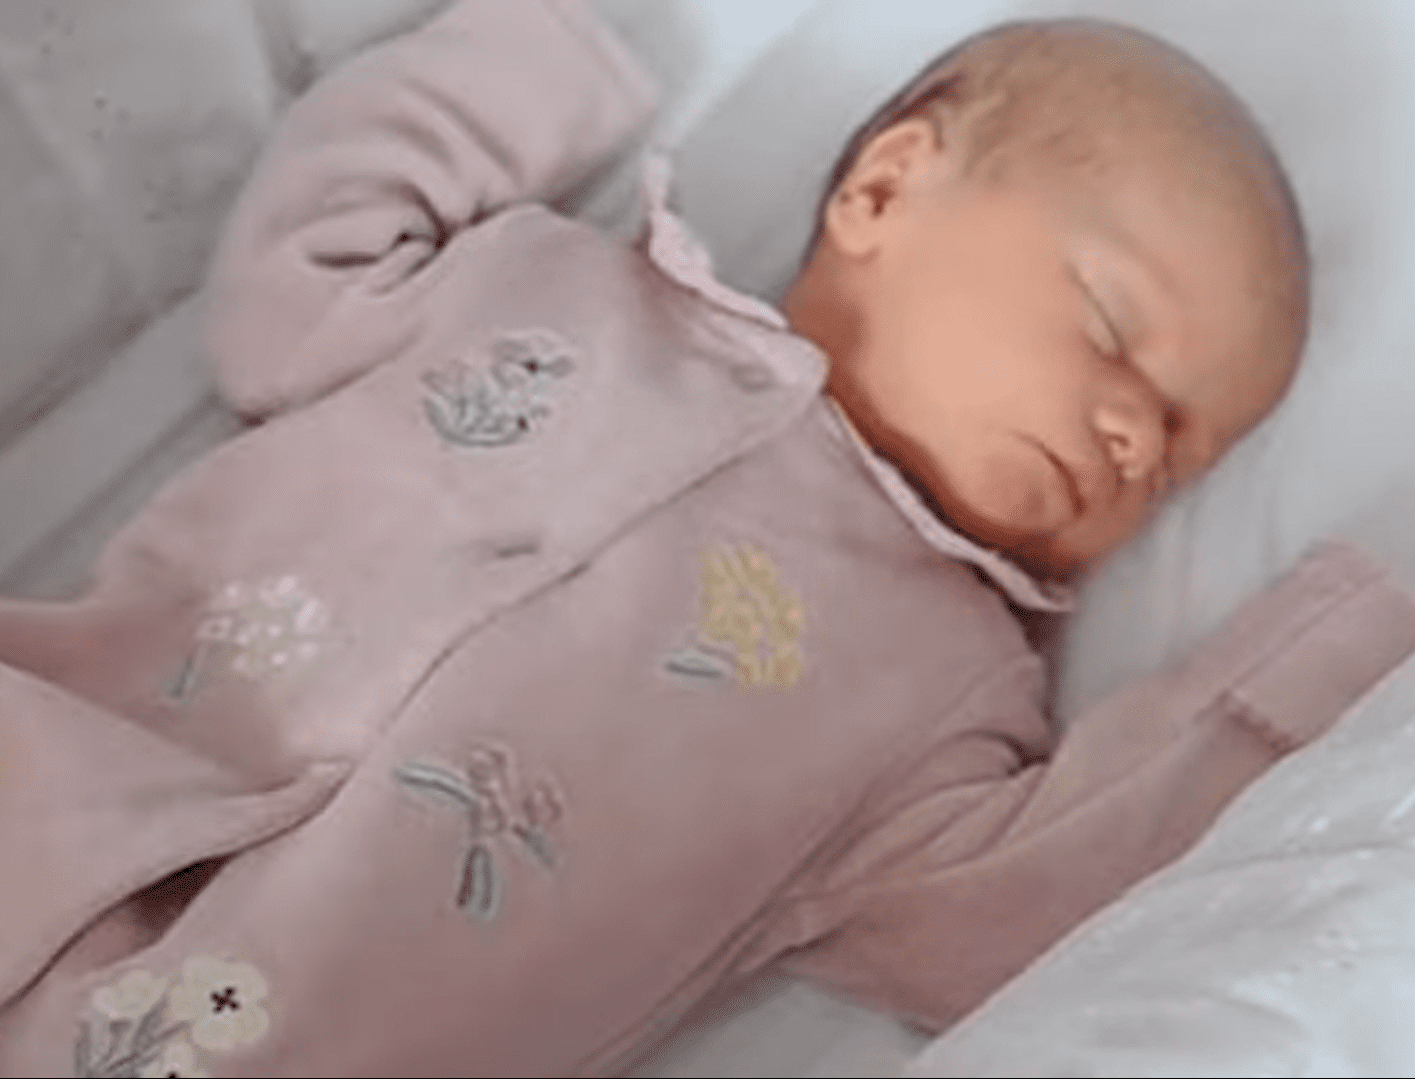 Baby Baylee-Rae schläft. | Quelle: Youtube.com/Wales Online